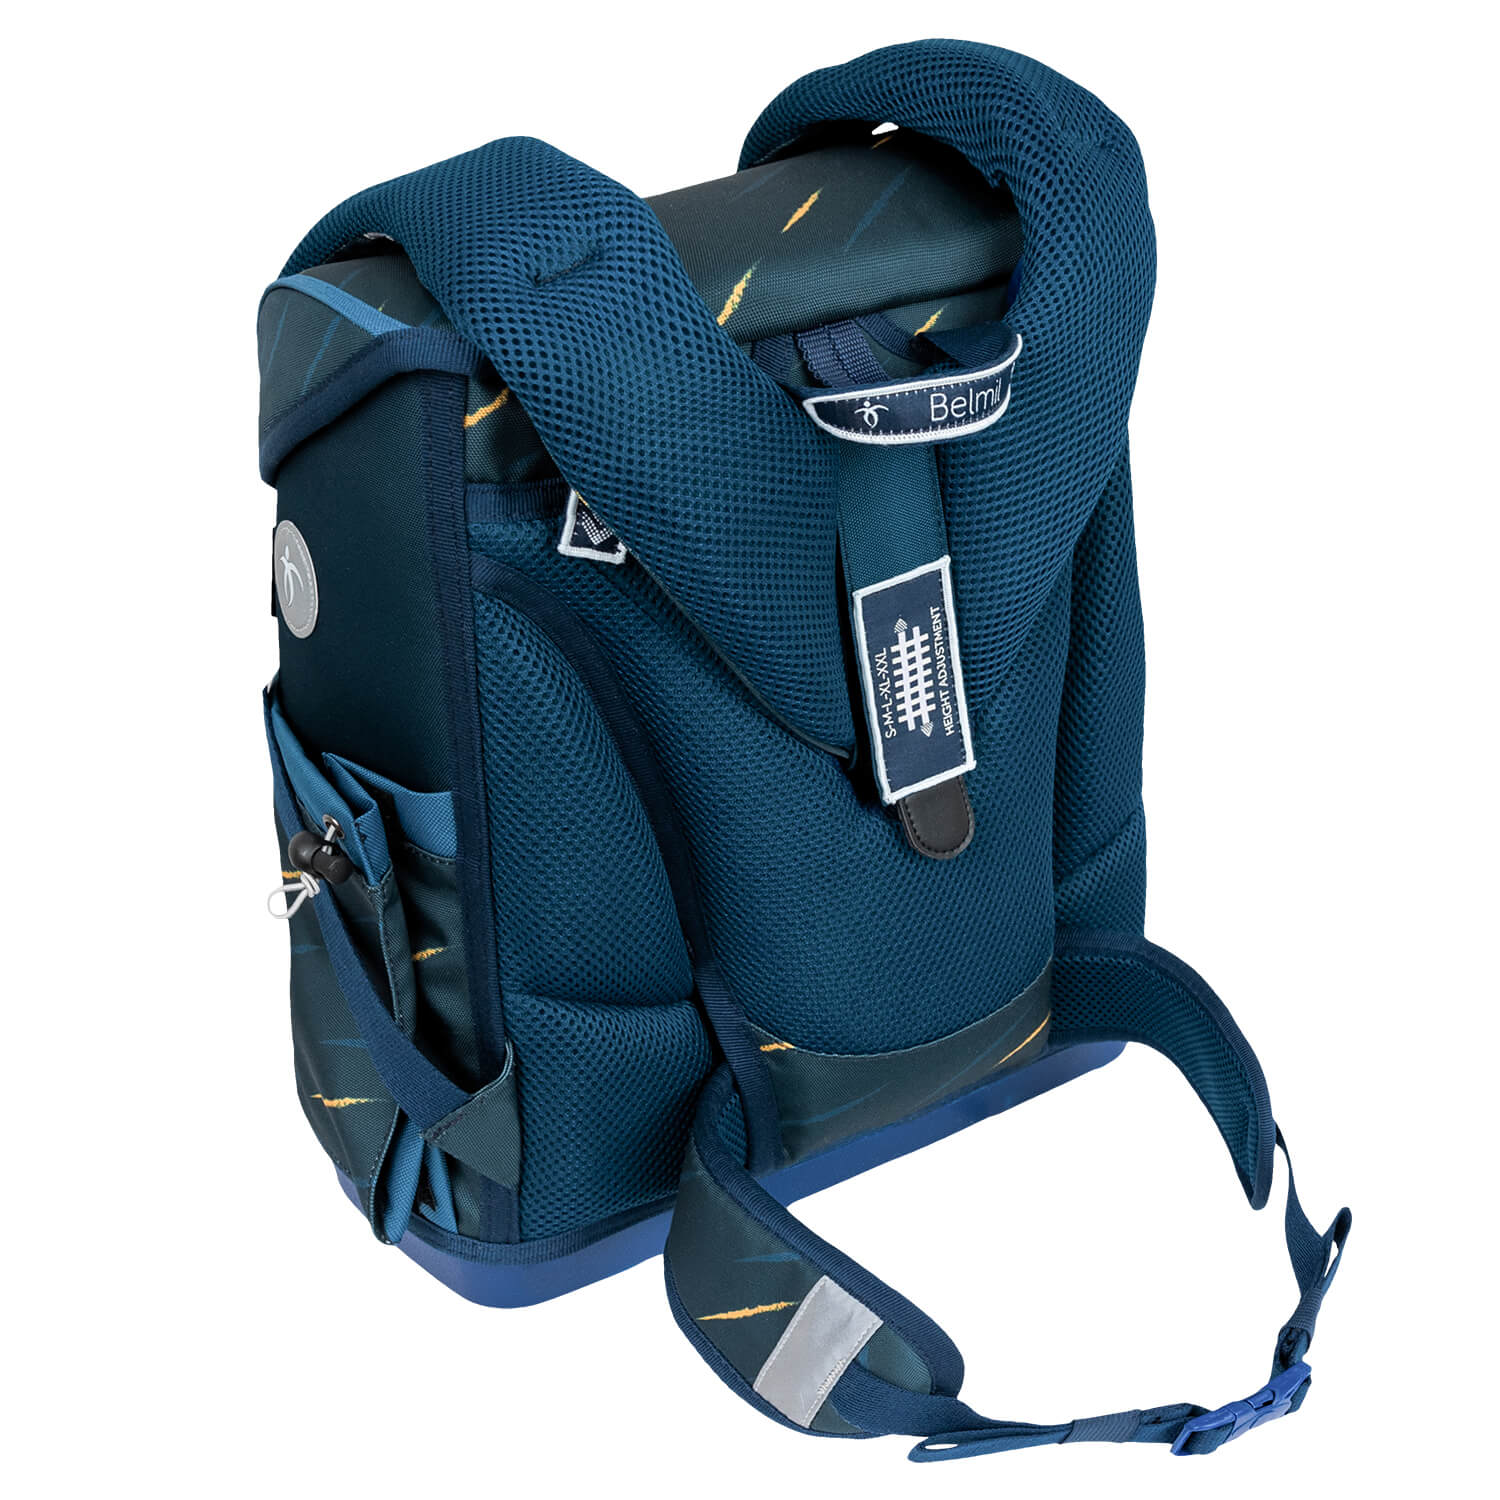 Premium Compact Plus Orion Blue Schoolbag set 5pcs.